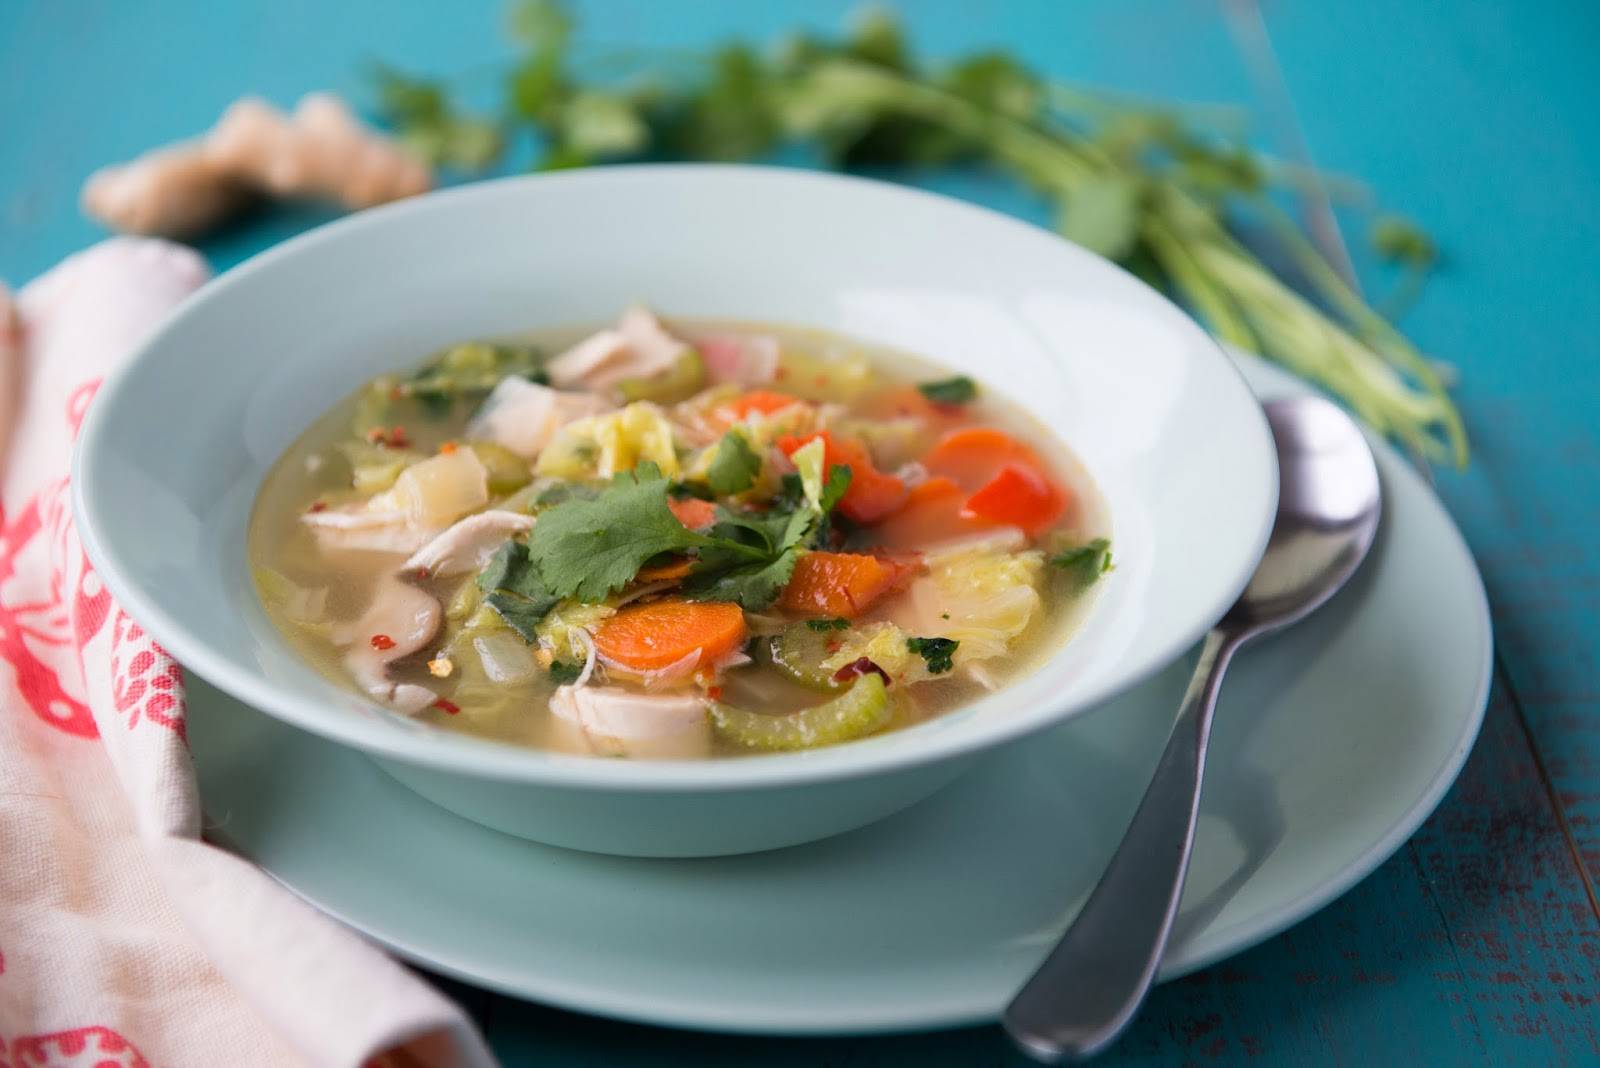 Диетические супы - рецепты приготовления легких овощных или куриных первых блюд для похудения и диеты